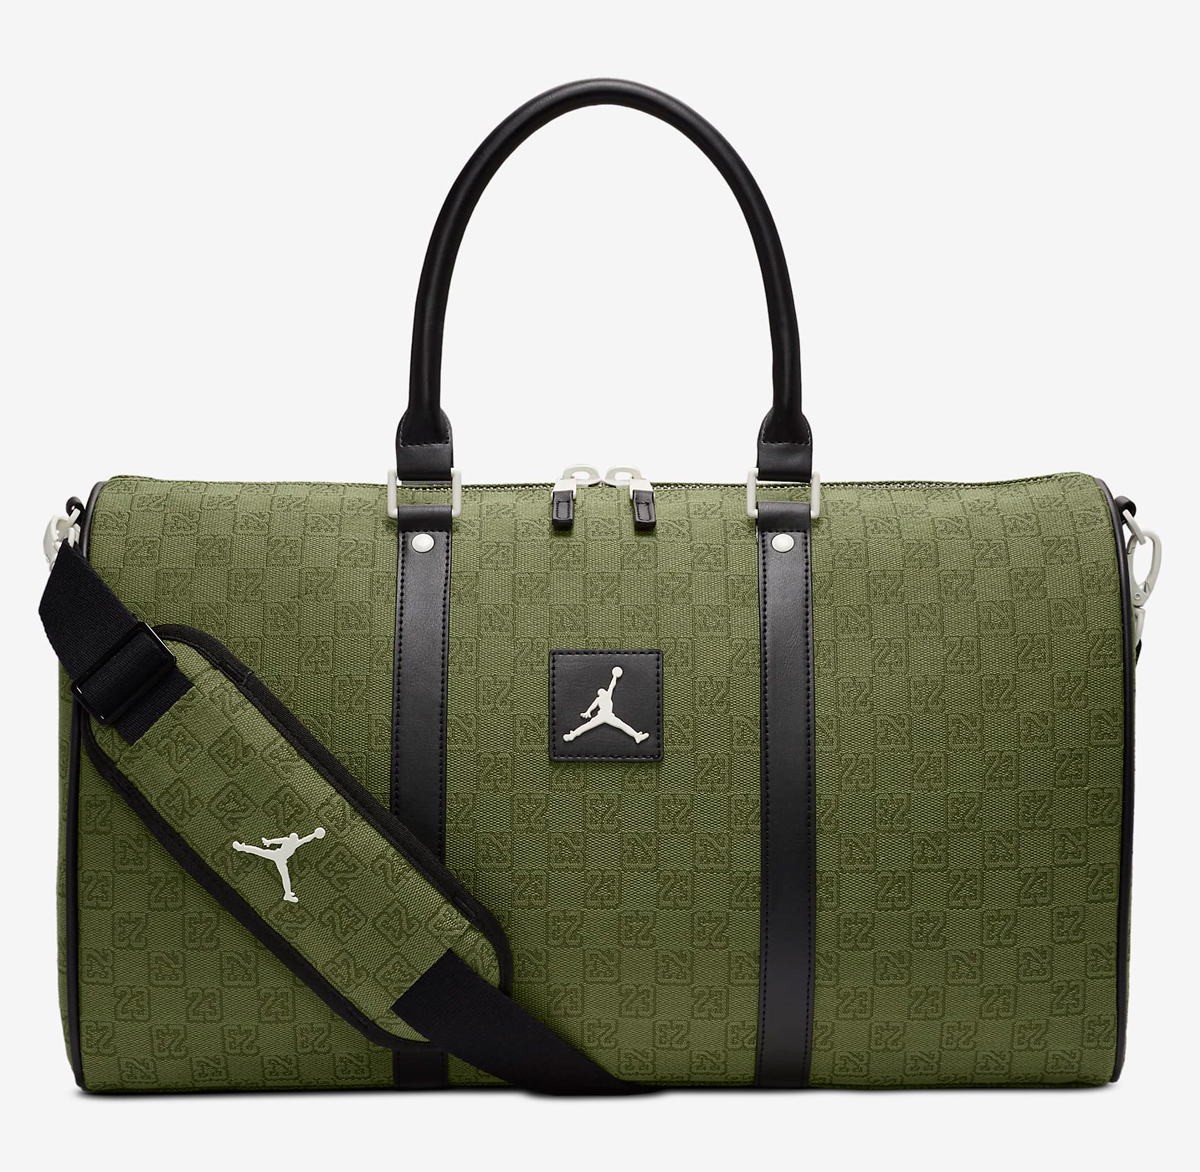 Jordan-Monogram-Duffle-Bag-Olive-Green-3